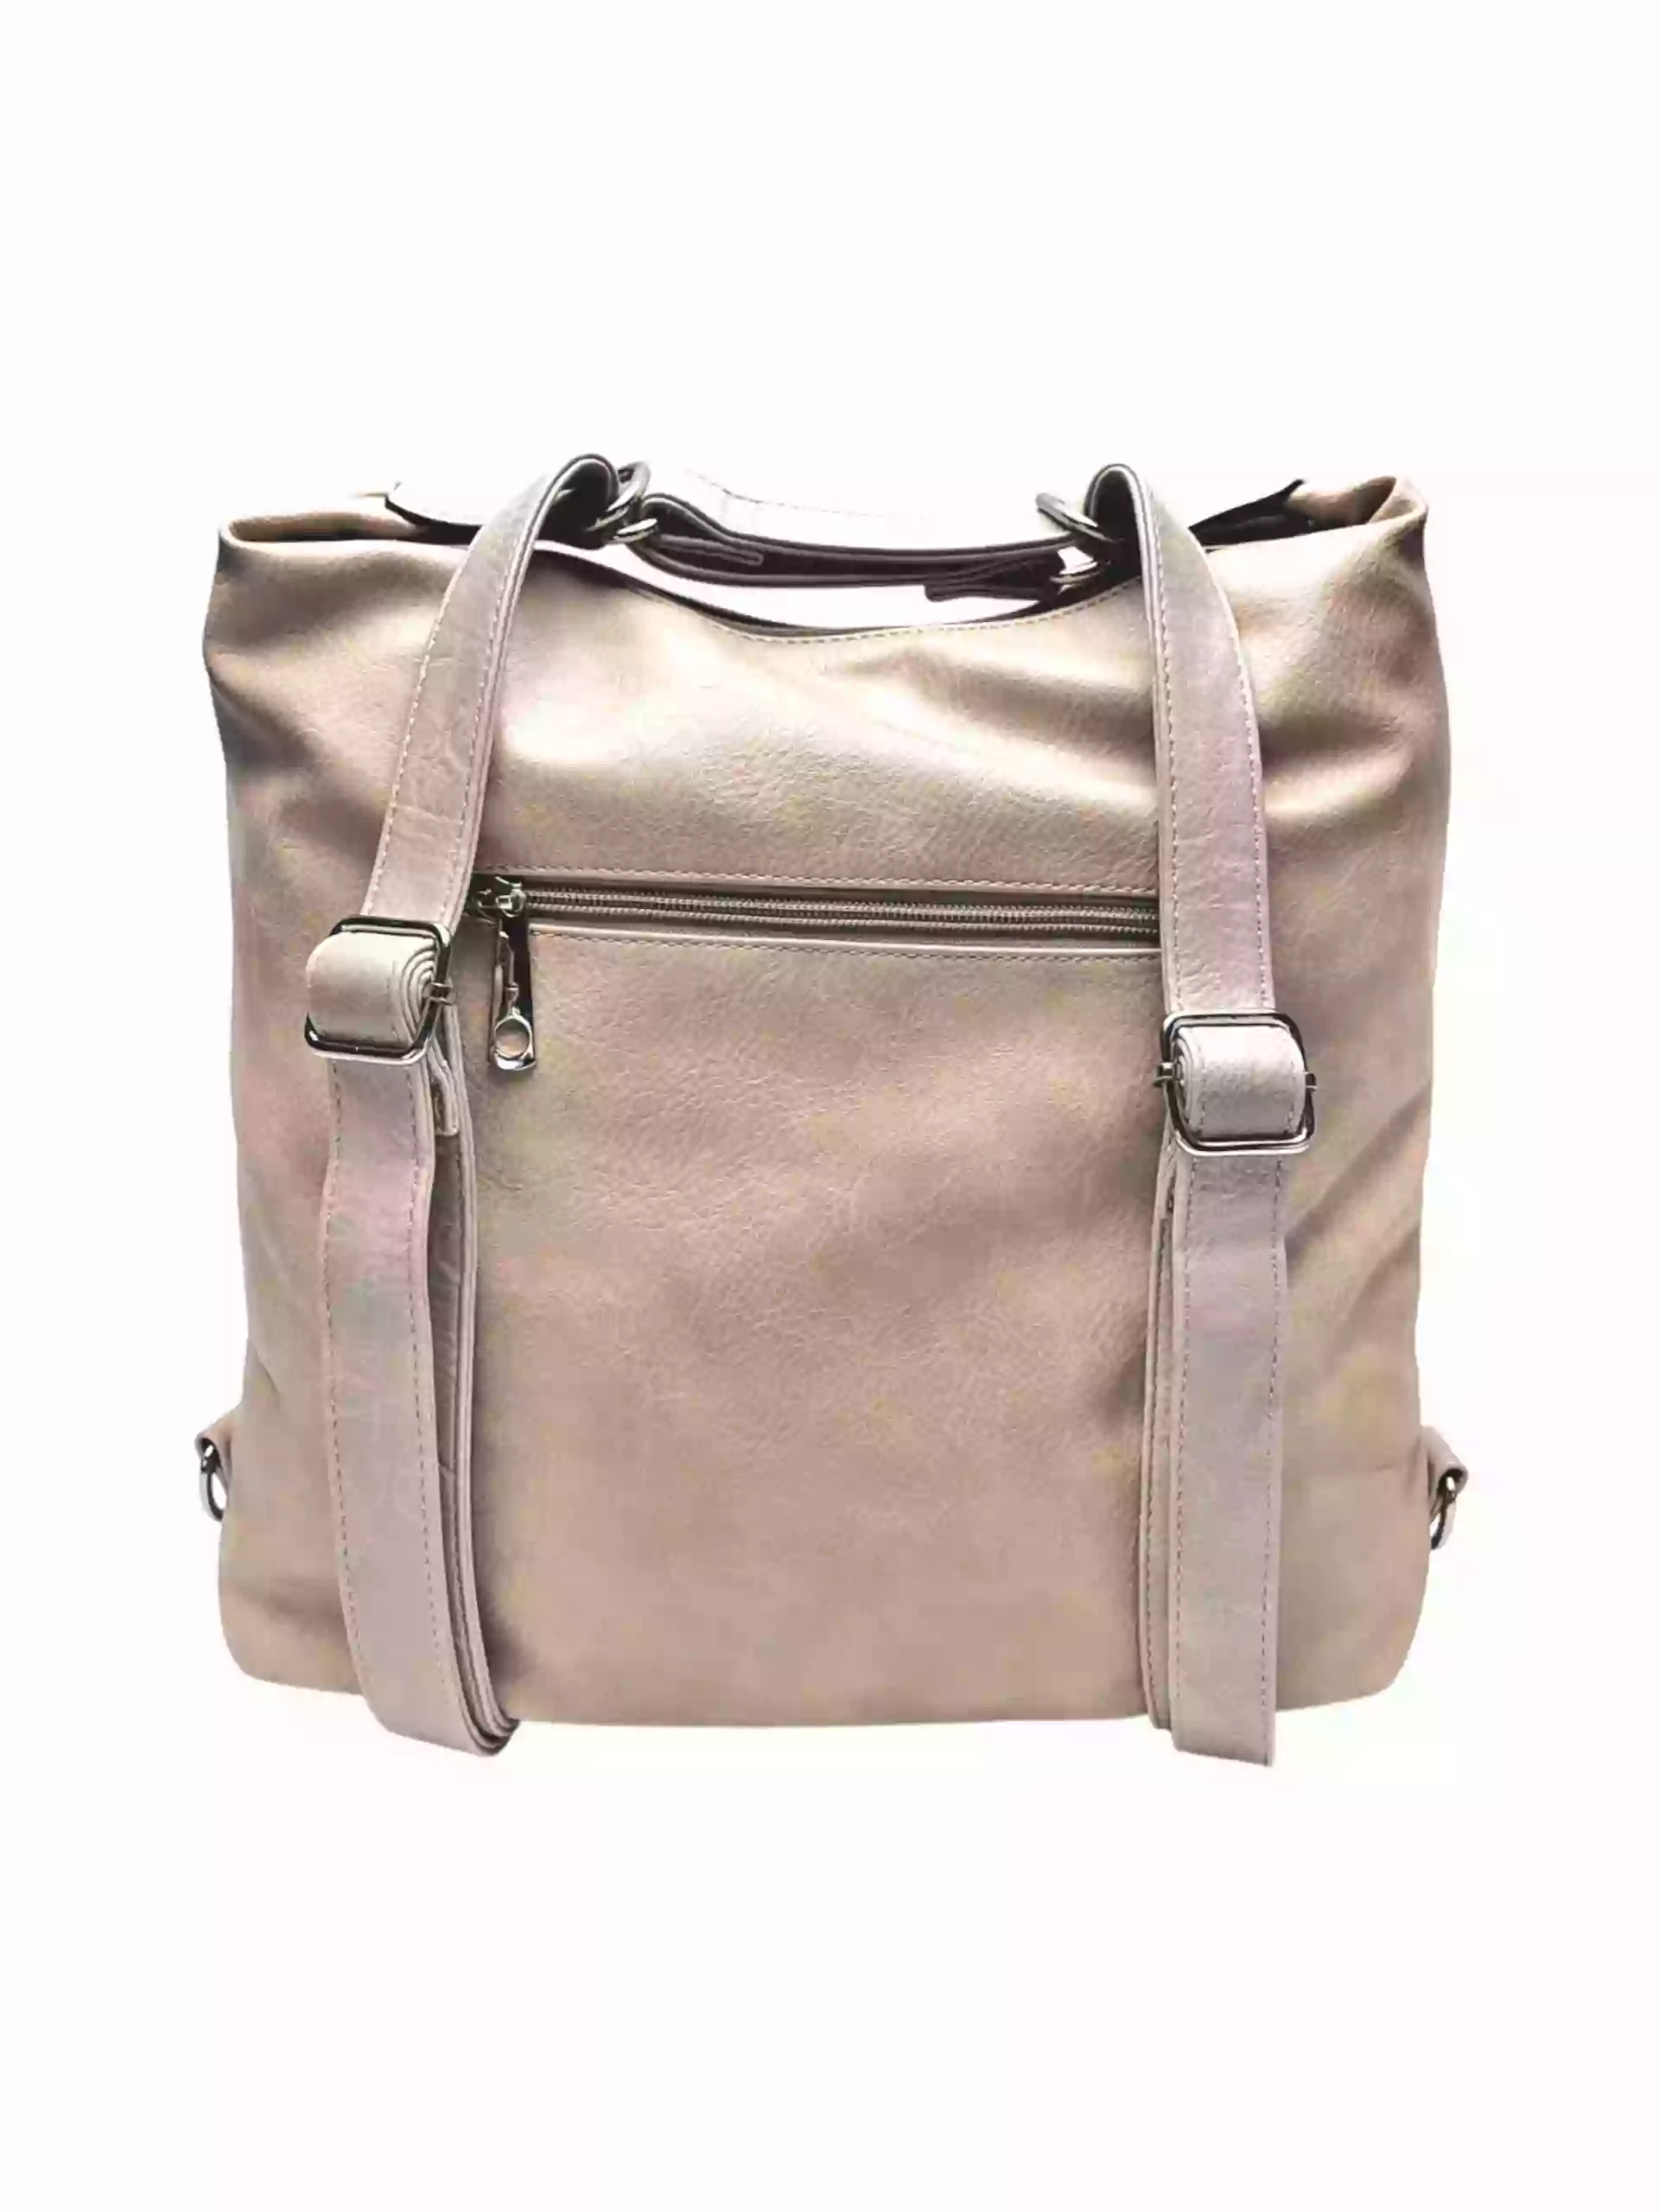 Moderní světle hnědý kabelko-batoh z eko kůže, Tapple, H190010, zadní strana kabelko-batohu 2v1 s popruhy